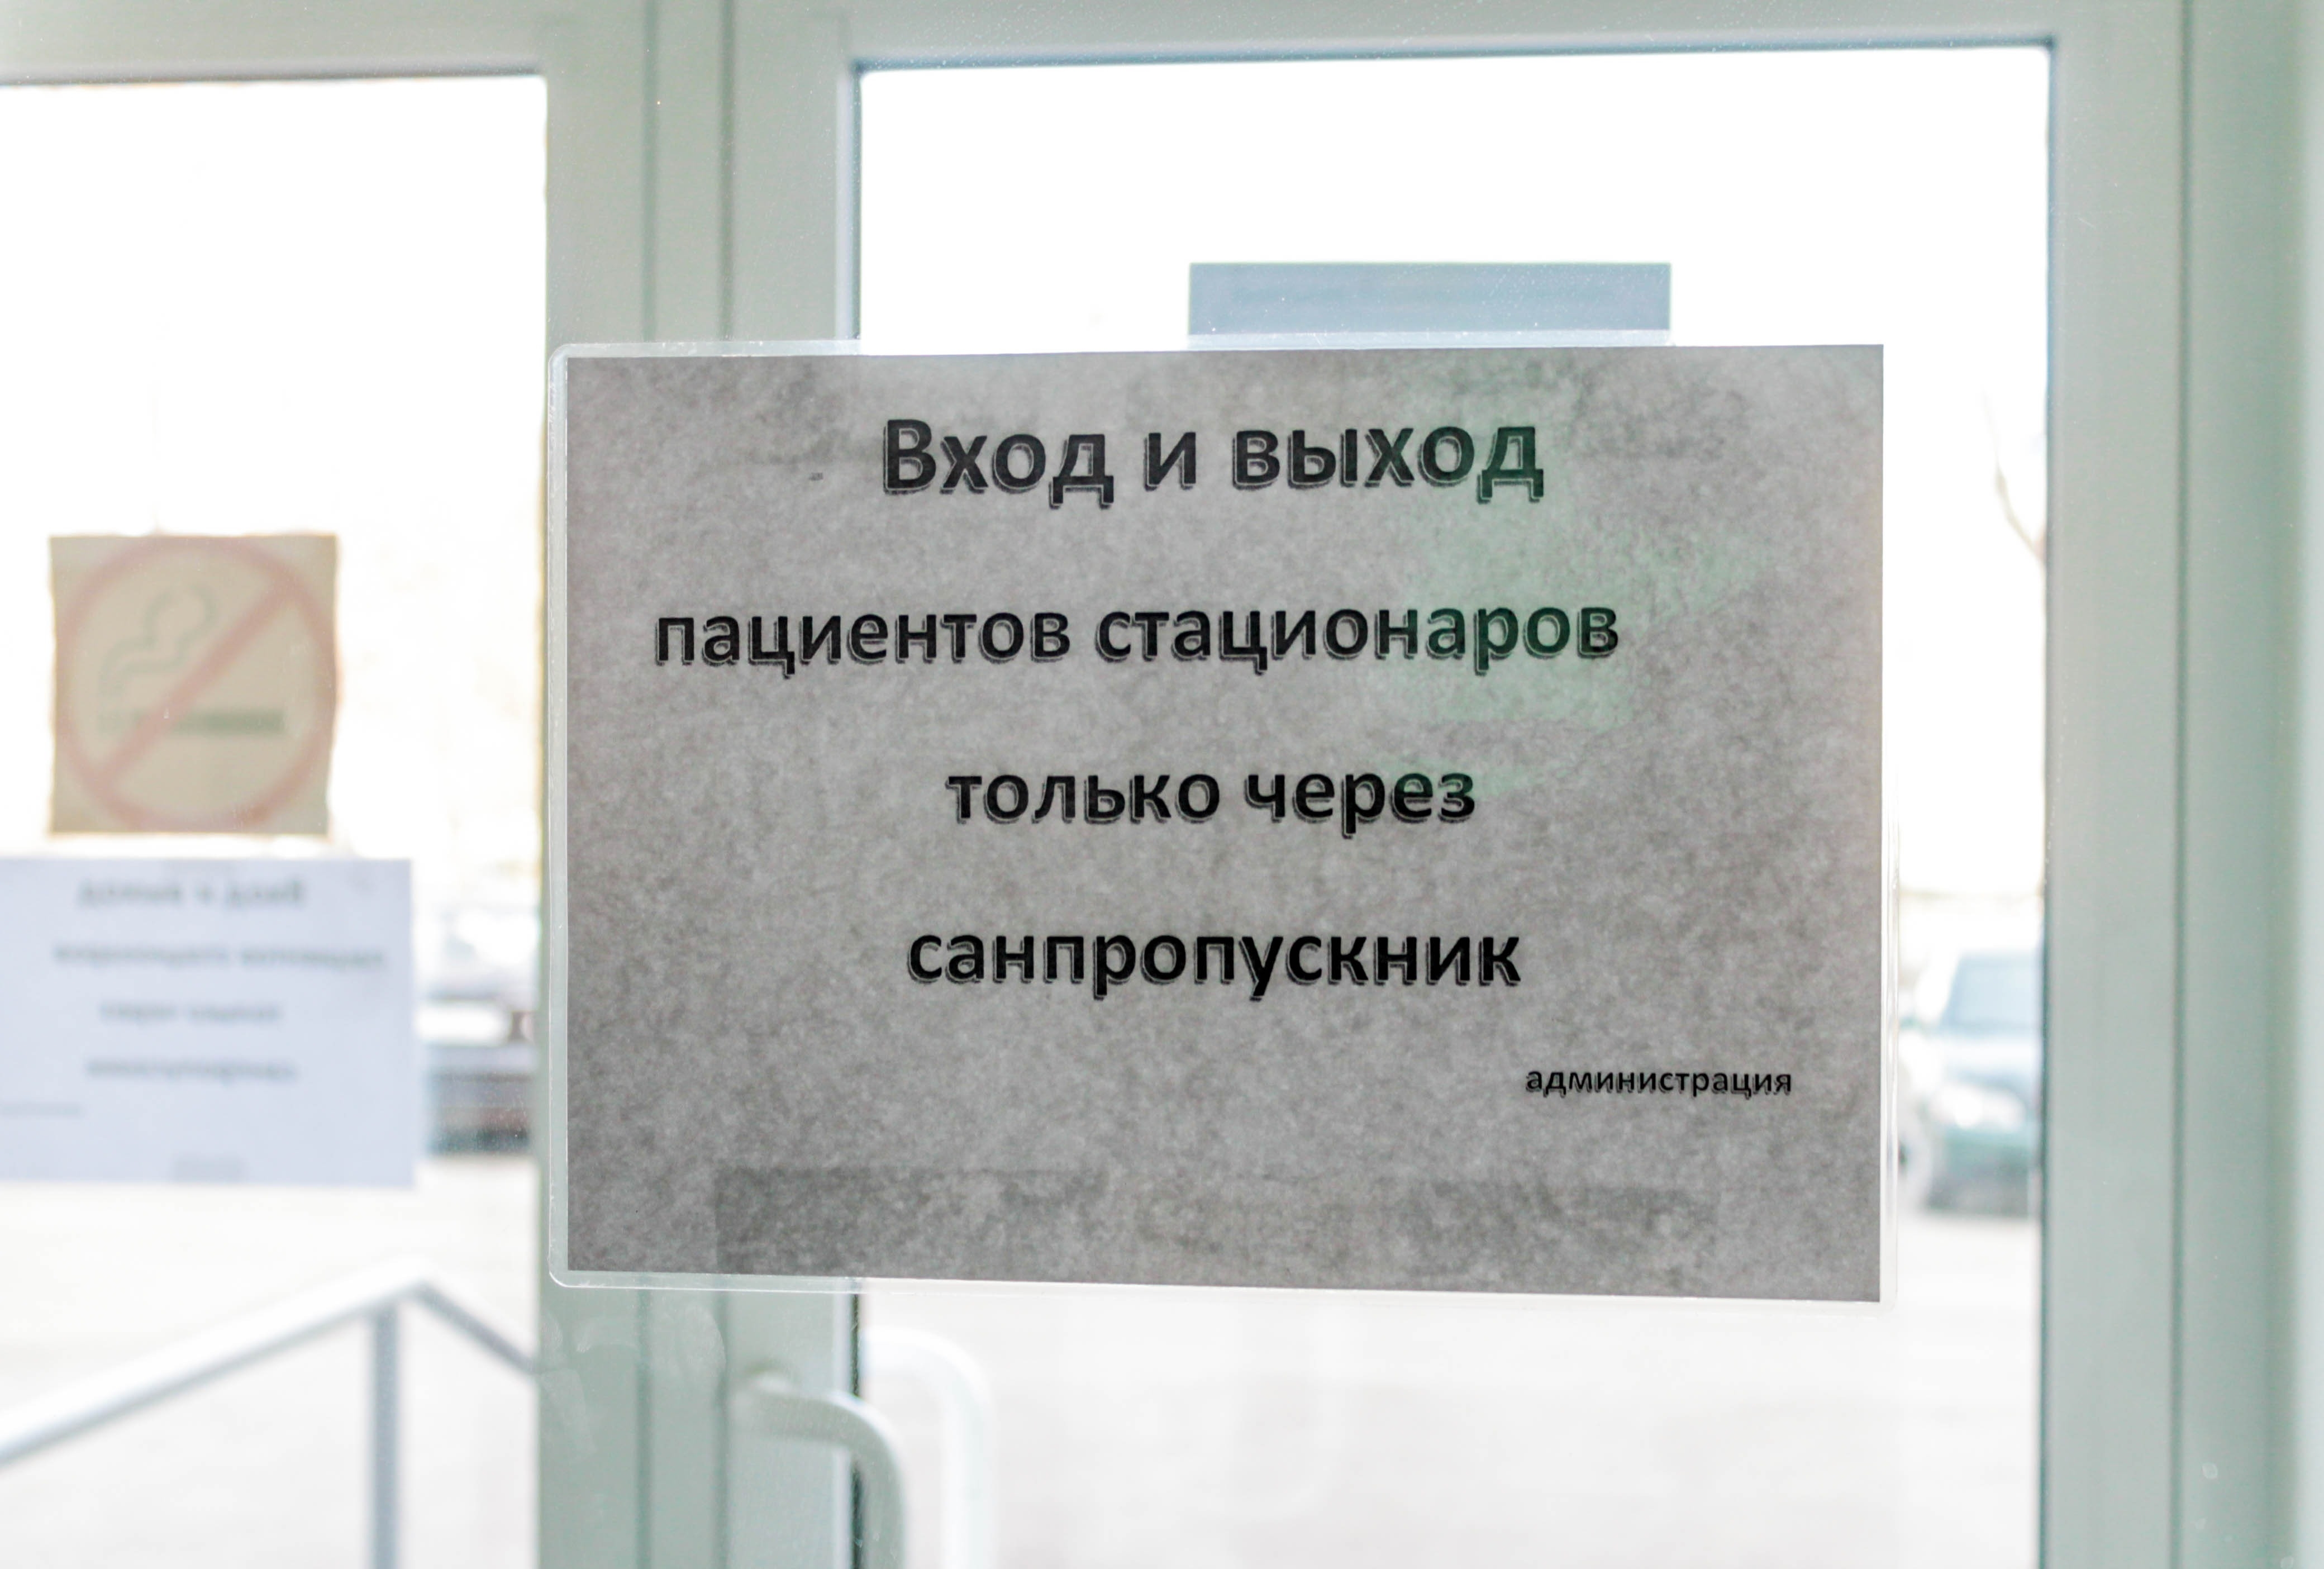 Отделение больницы Белогорска закрыли на карантин из-за пациентов с COVID-19